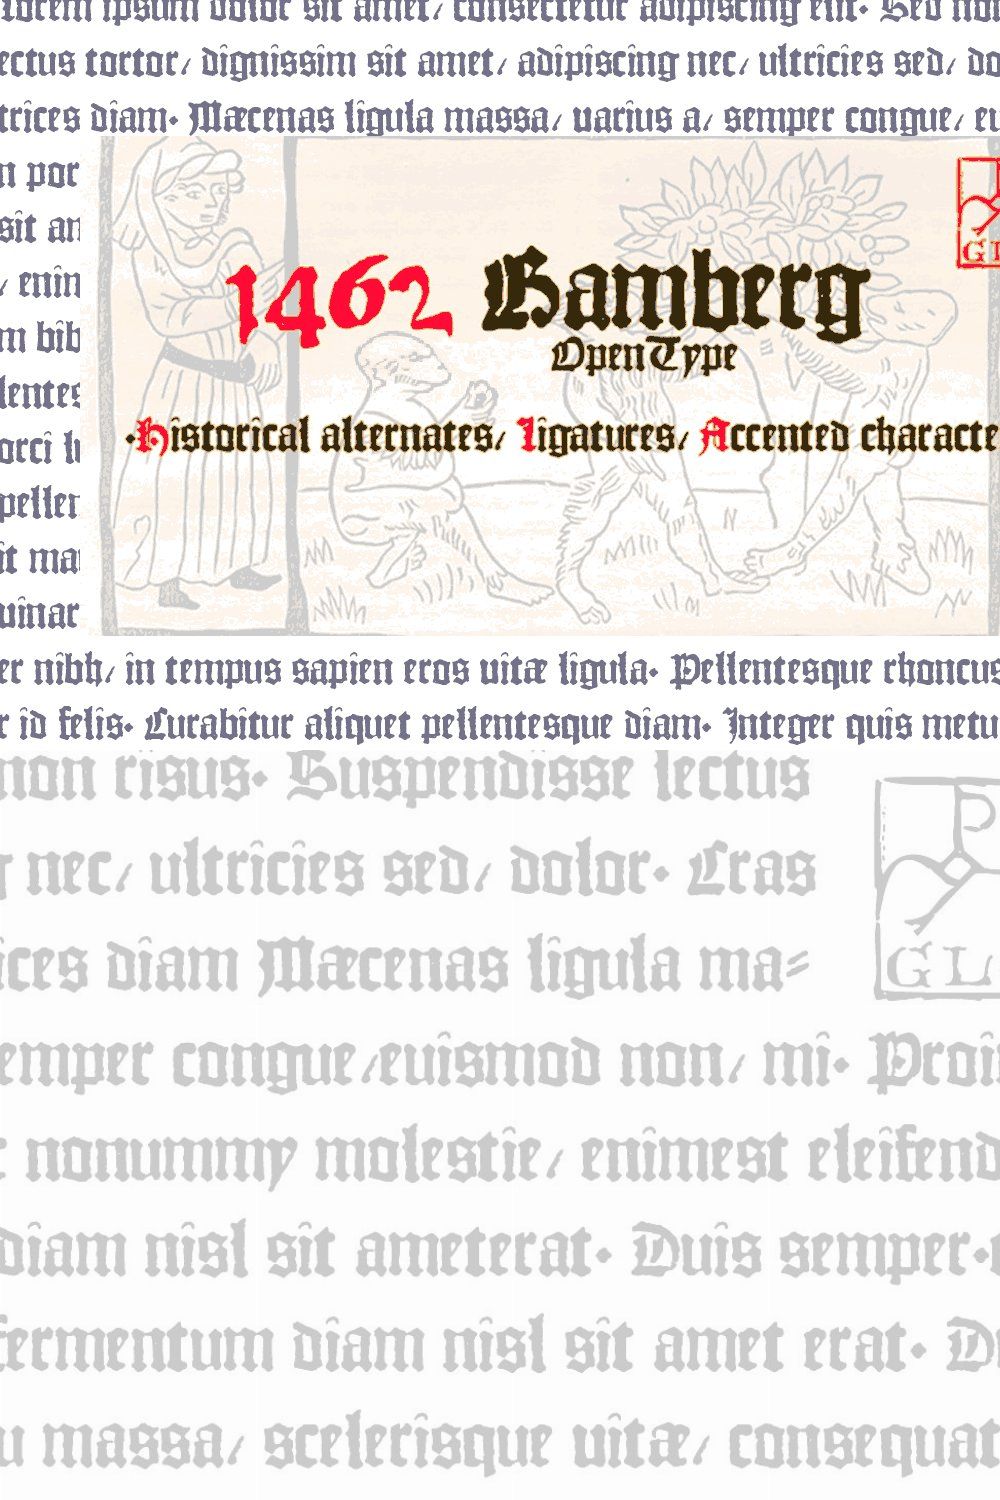 1462 Bamberg OTF pinterest preview image.